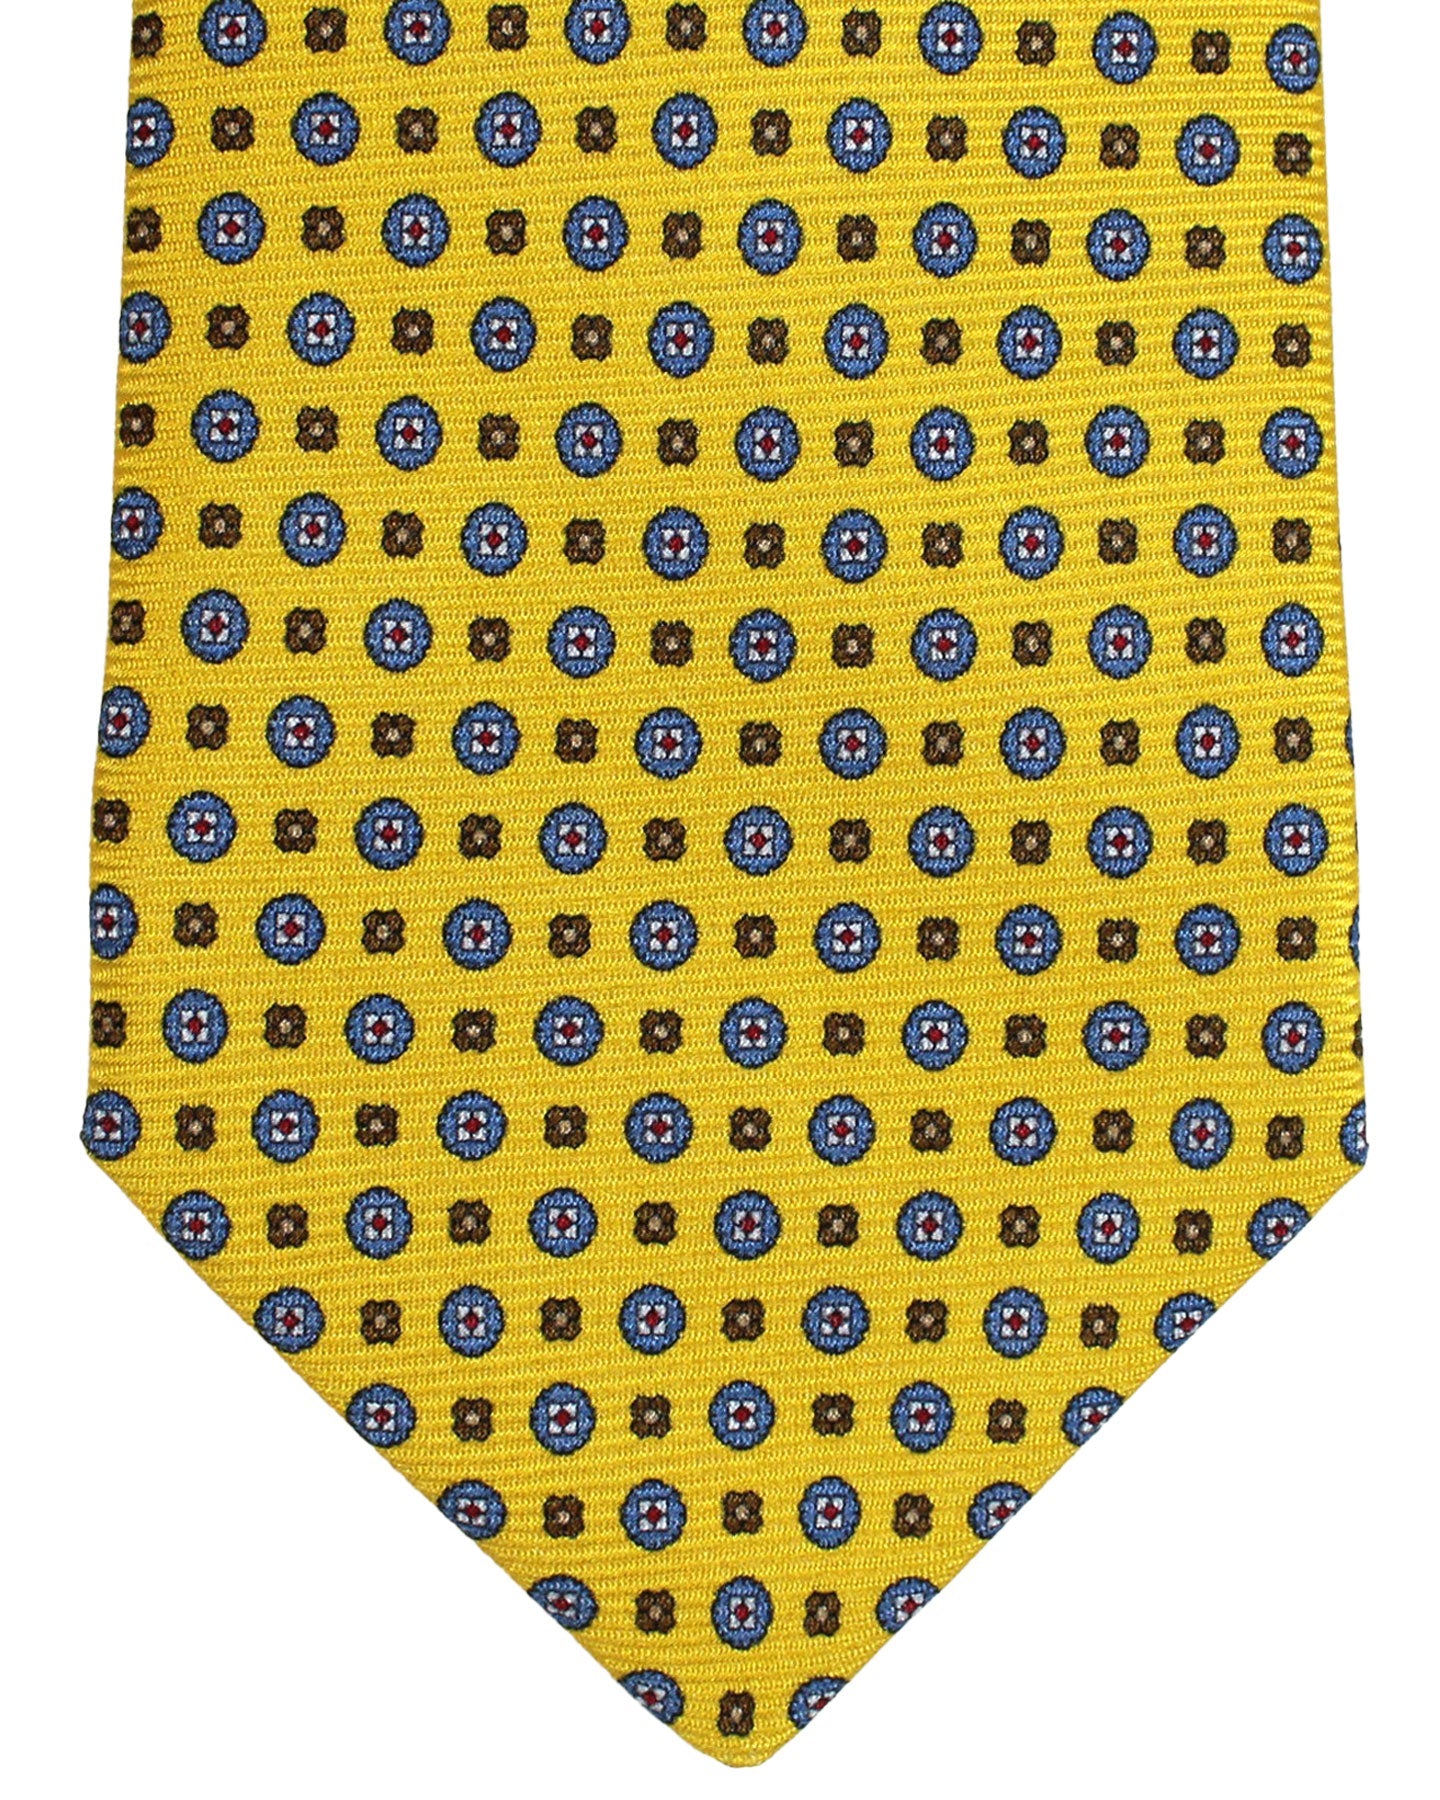 Kiton Silk Tie Mustard Yellow Blue Mini Medallions Design - Sevenfold Necktie